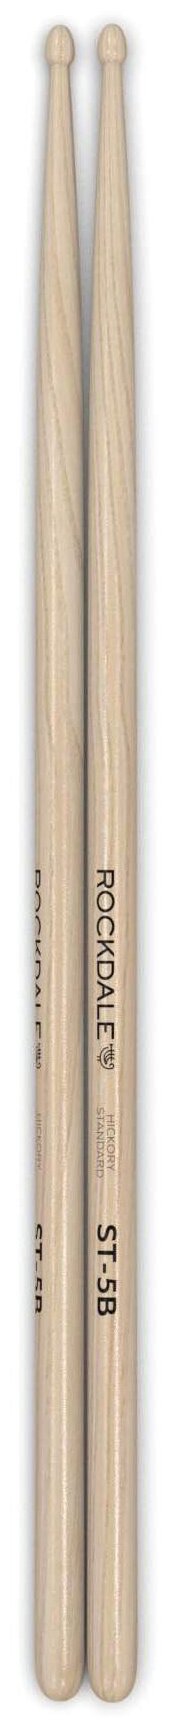 ROCKDALE Hickory Standard ST-5B барабанные палочки, орех, деревянный наконечник, цвет - натуральный